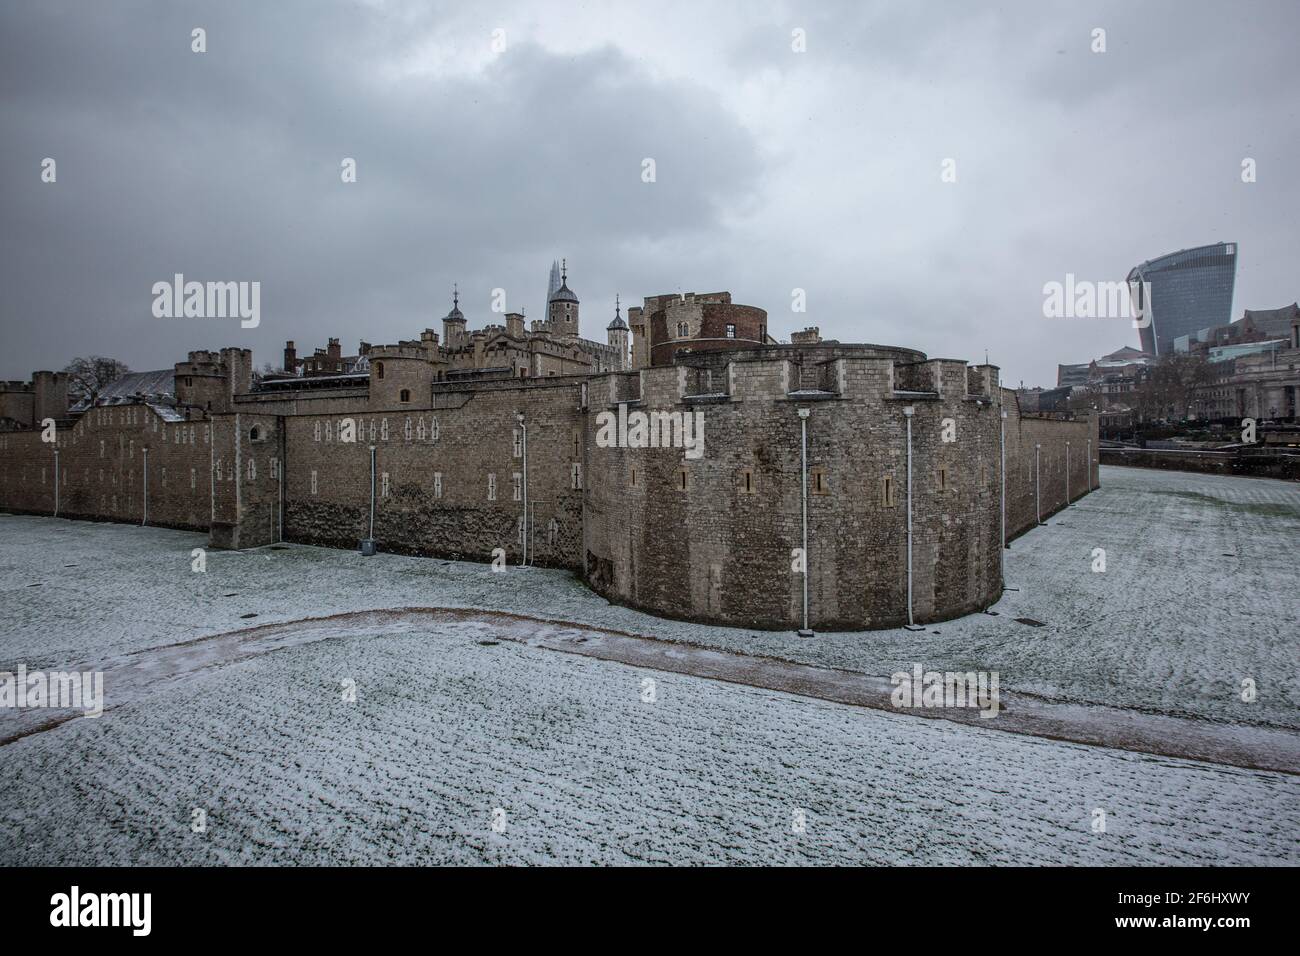 Der Tower of London hatte einen Teppich im Schnee, als während des Sturms Darcy, London, England, Großbritannien, die eisigen Temperaturen London trafen Stockfoto